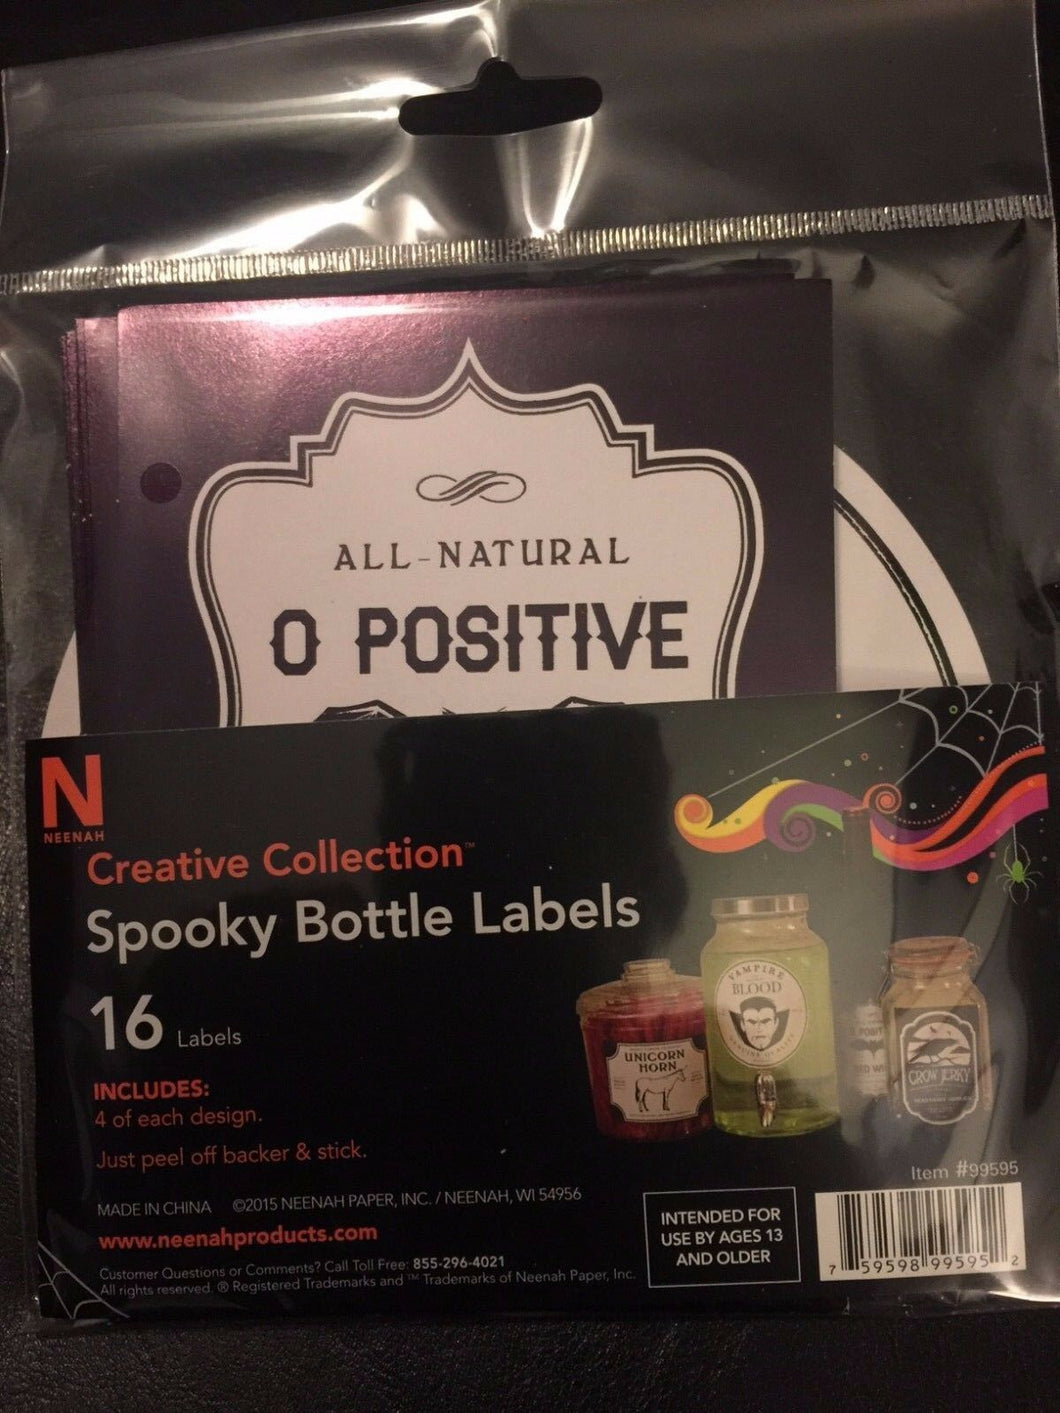 Spooky Bottle Labels - Prank Food Labels - Fake Jar Labels - Halloween Pranks